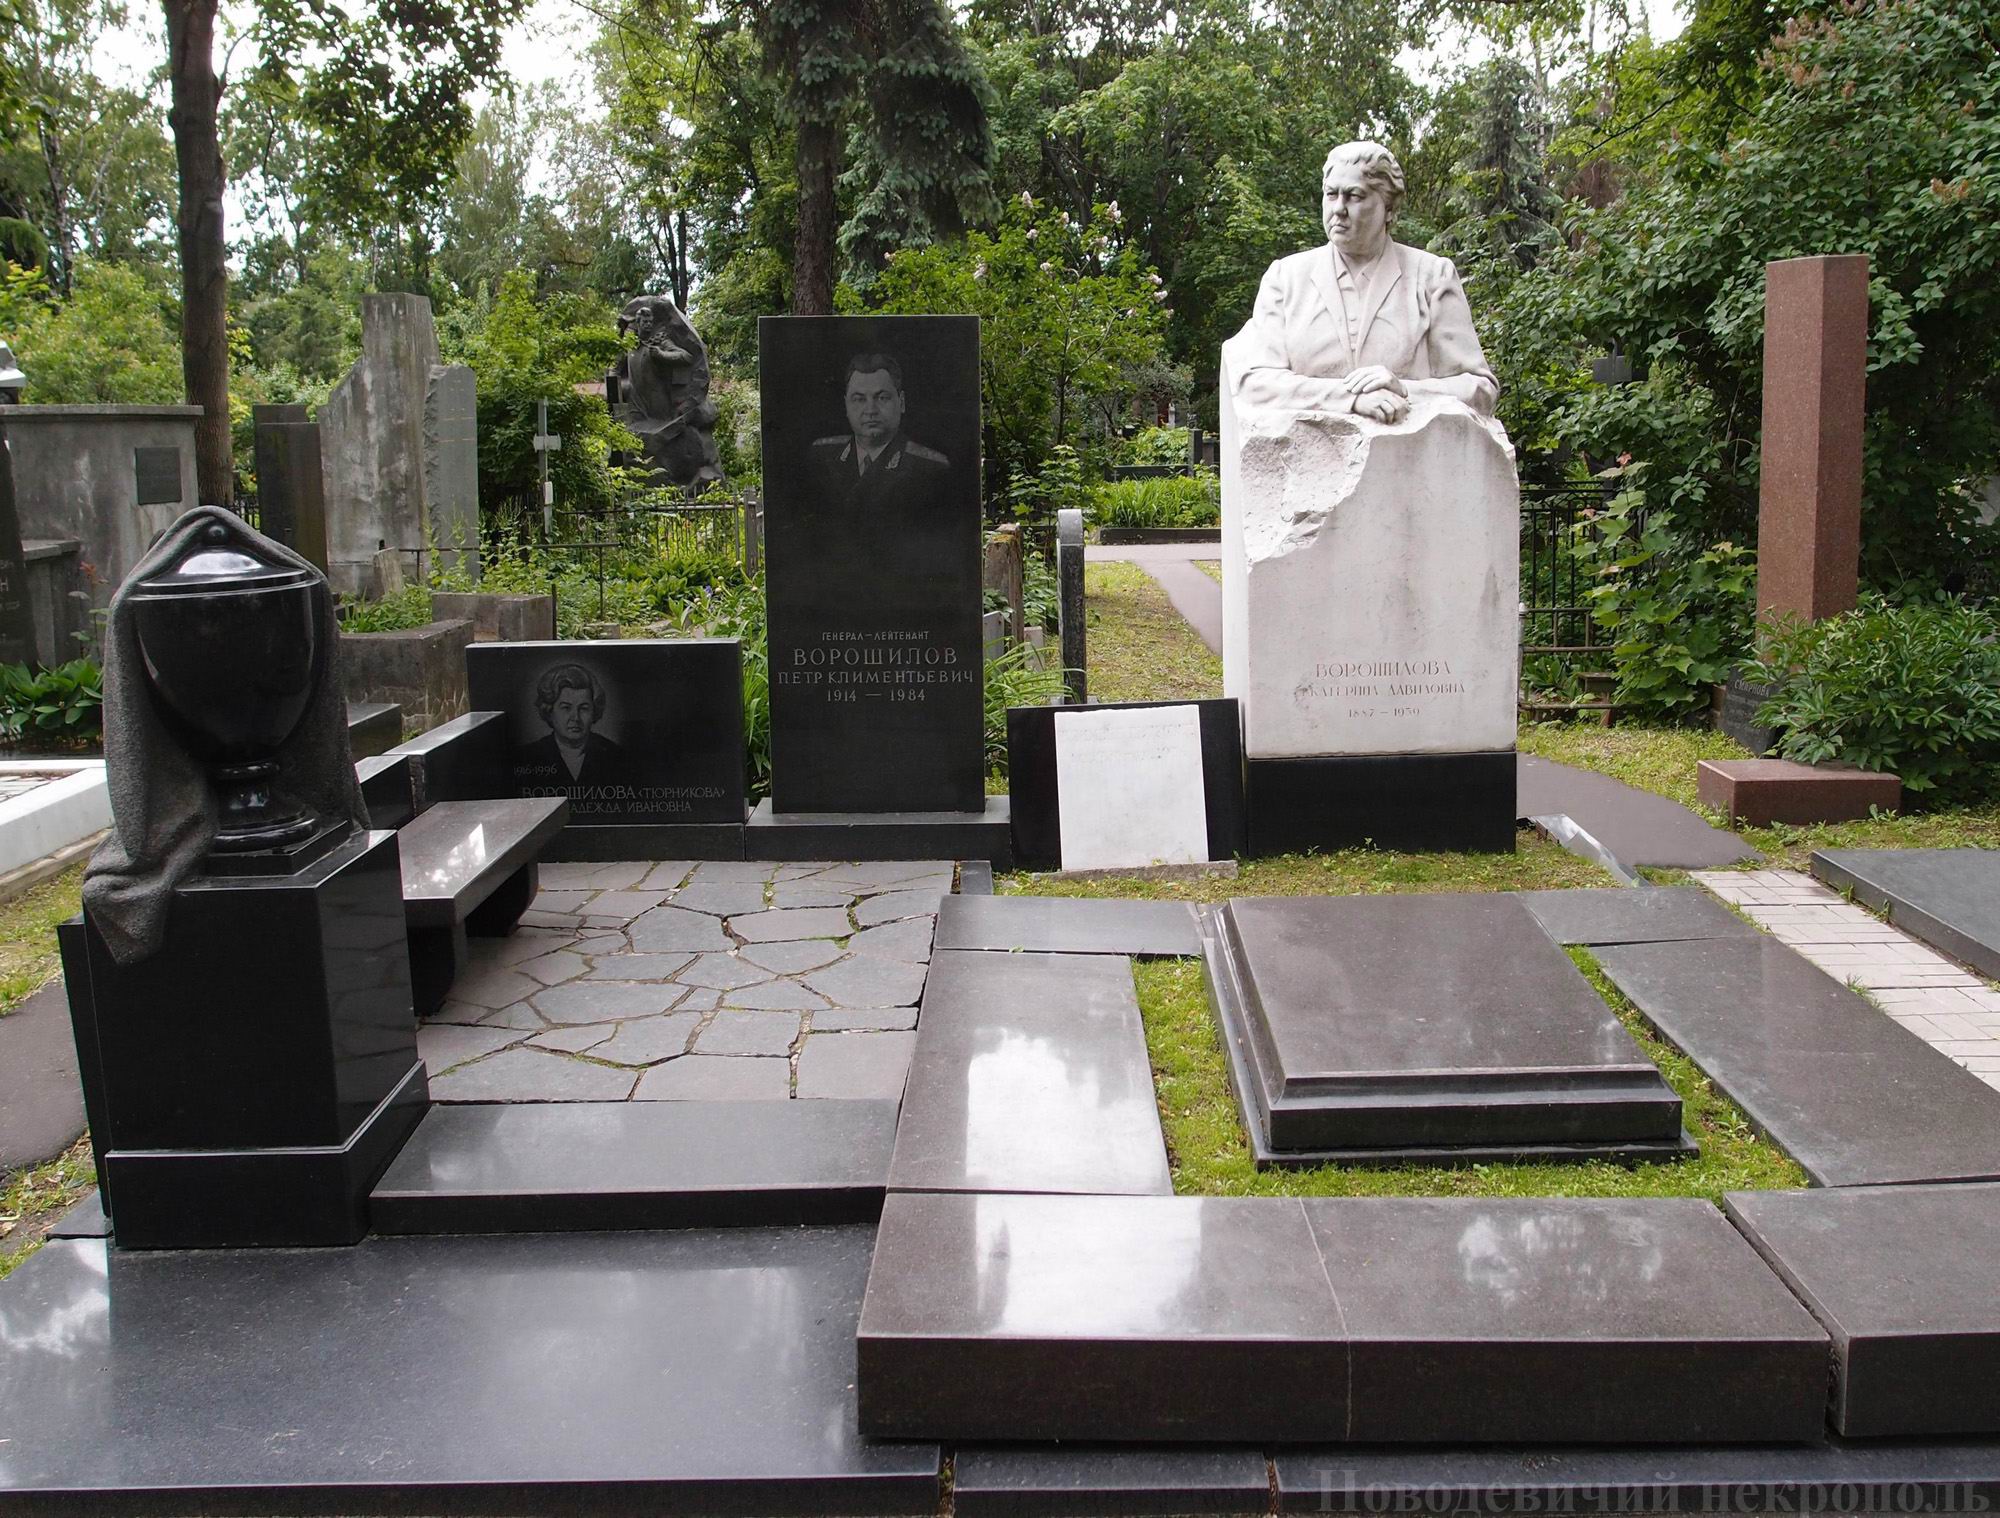 Памятник на могиле Ворошиловой Е.Д. (1887-1959), ск. А.Елецкий, на Новодевичьем кладбище (1-41-2). Нажмите левую кнопку мыши, чтобы увидеть бюст крупно.